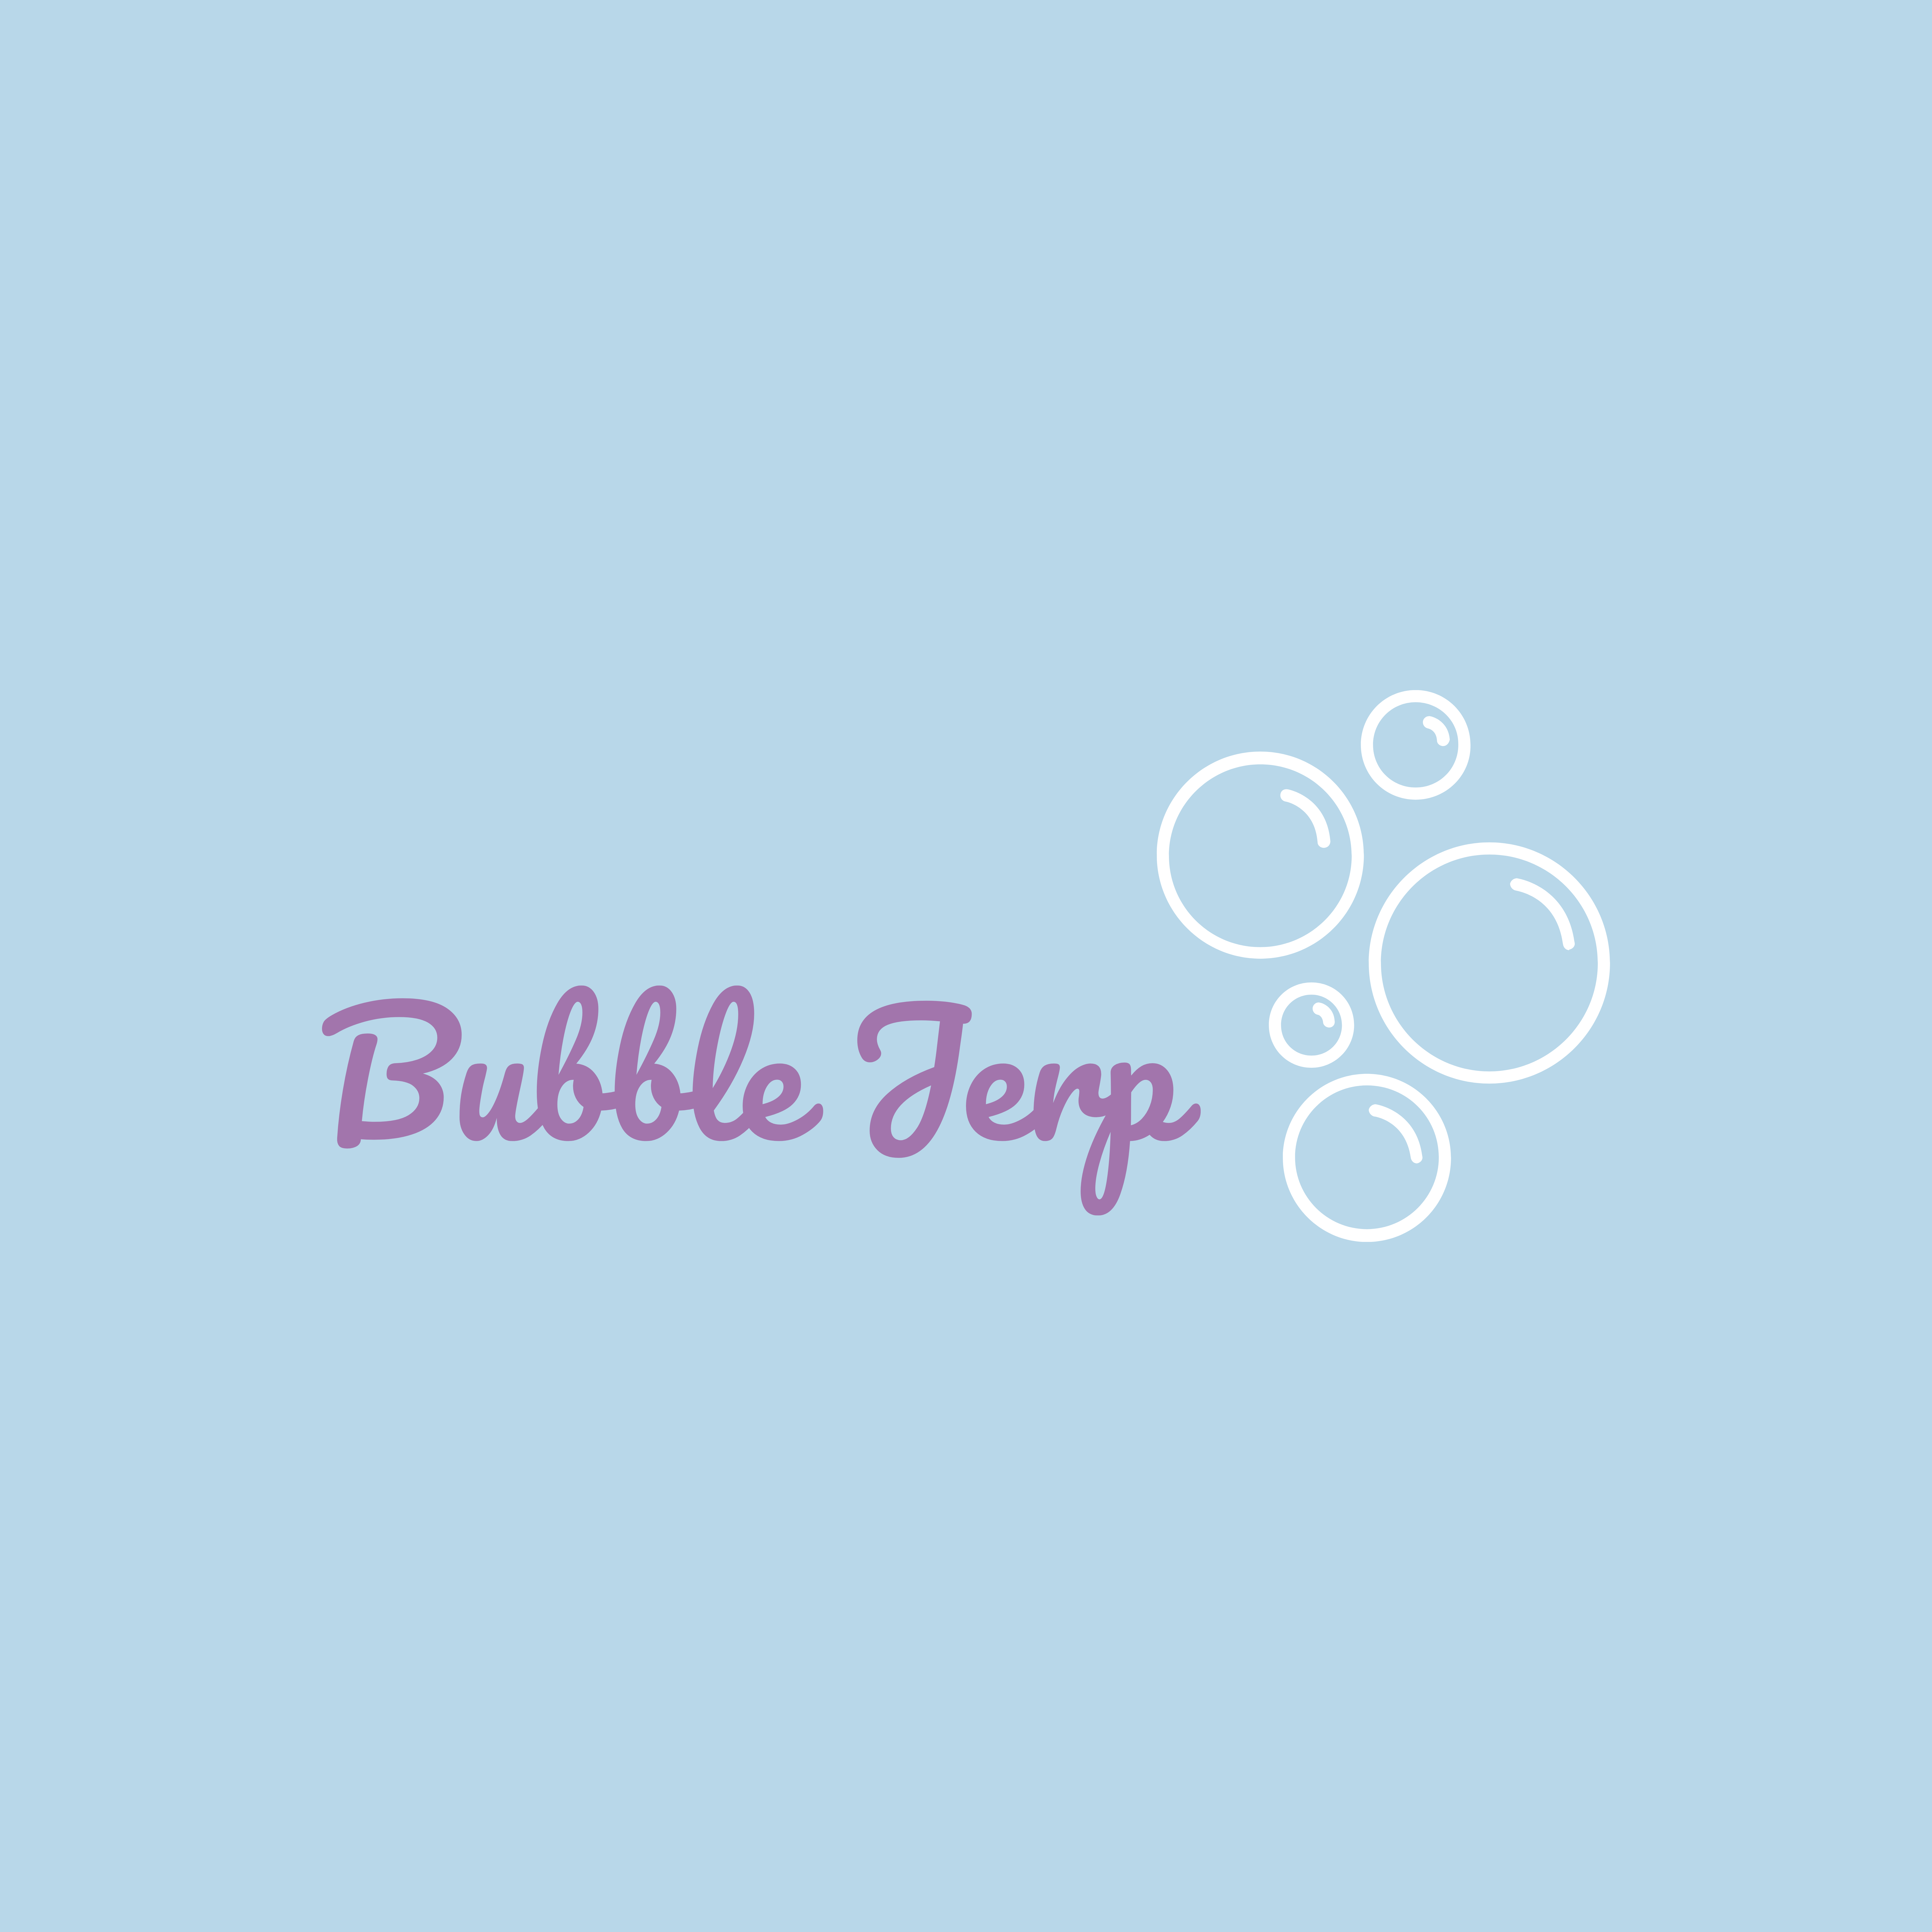 Bubble Jerp Ltd Logo